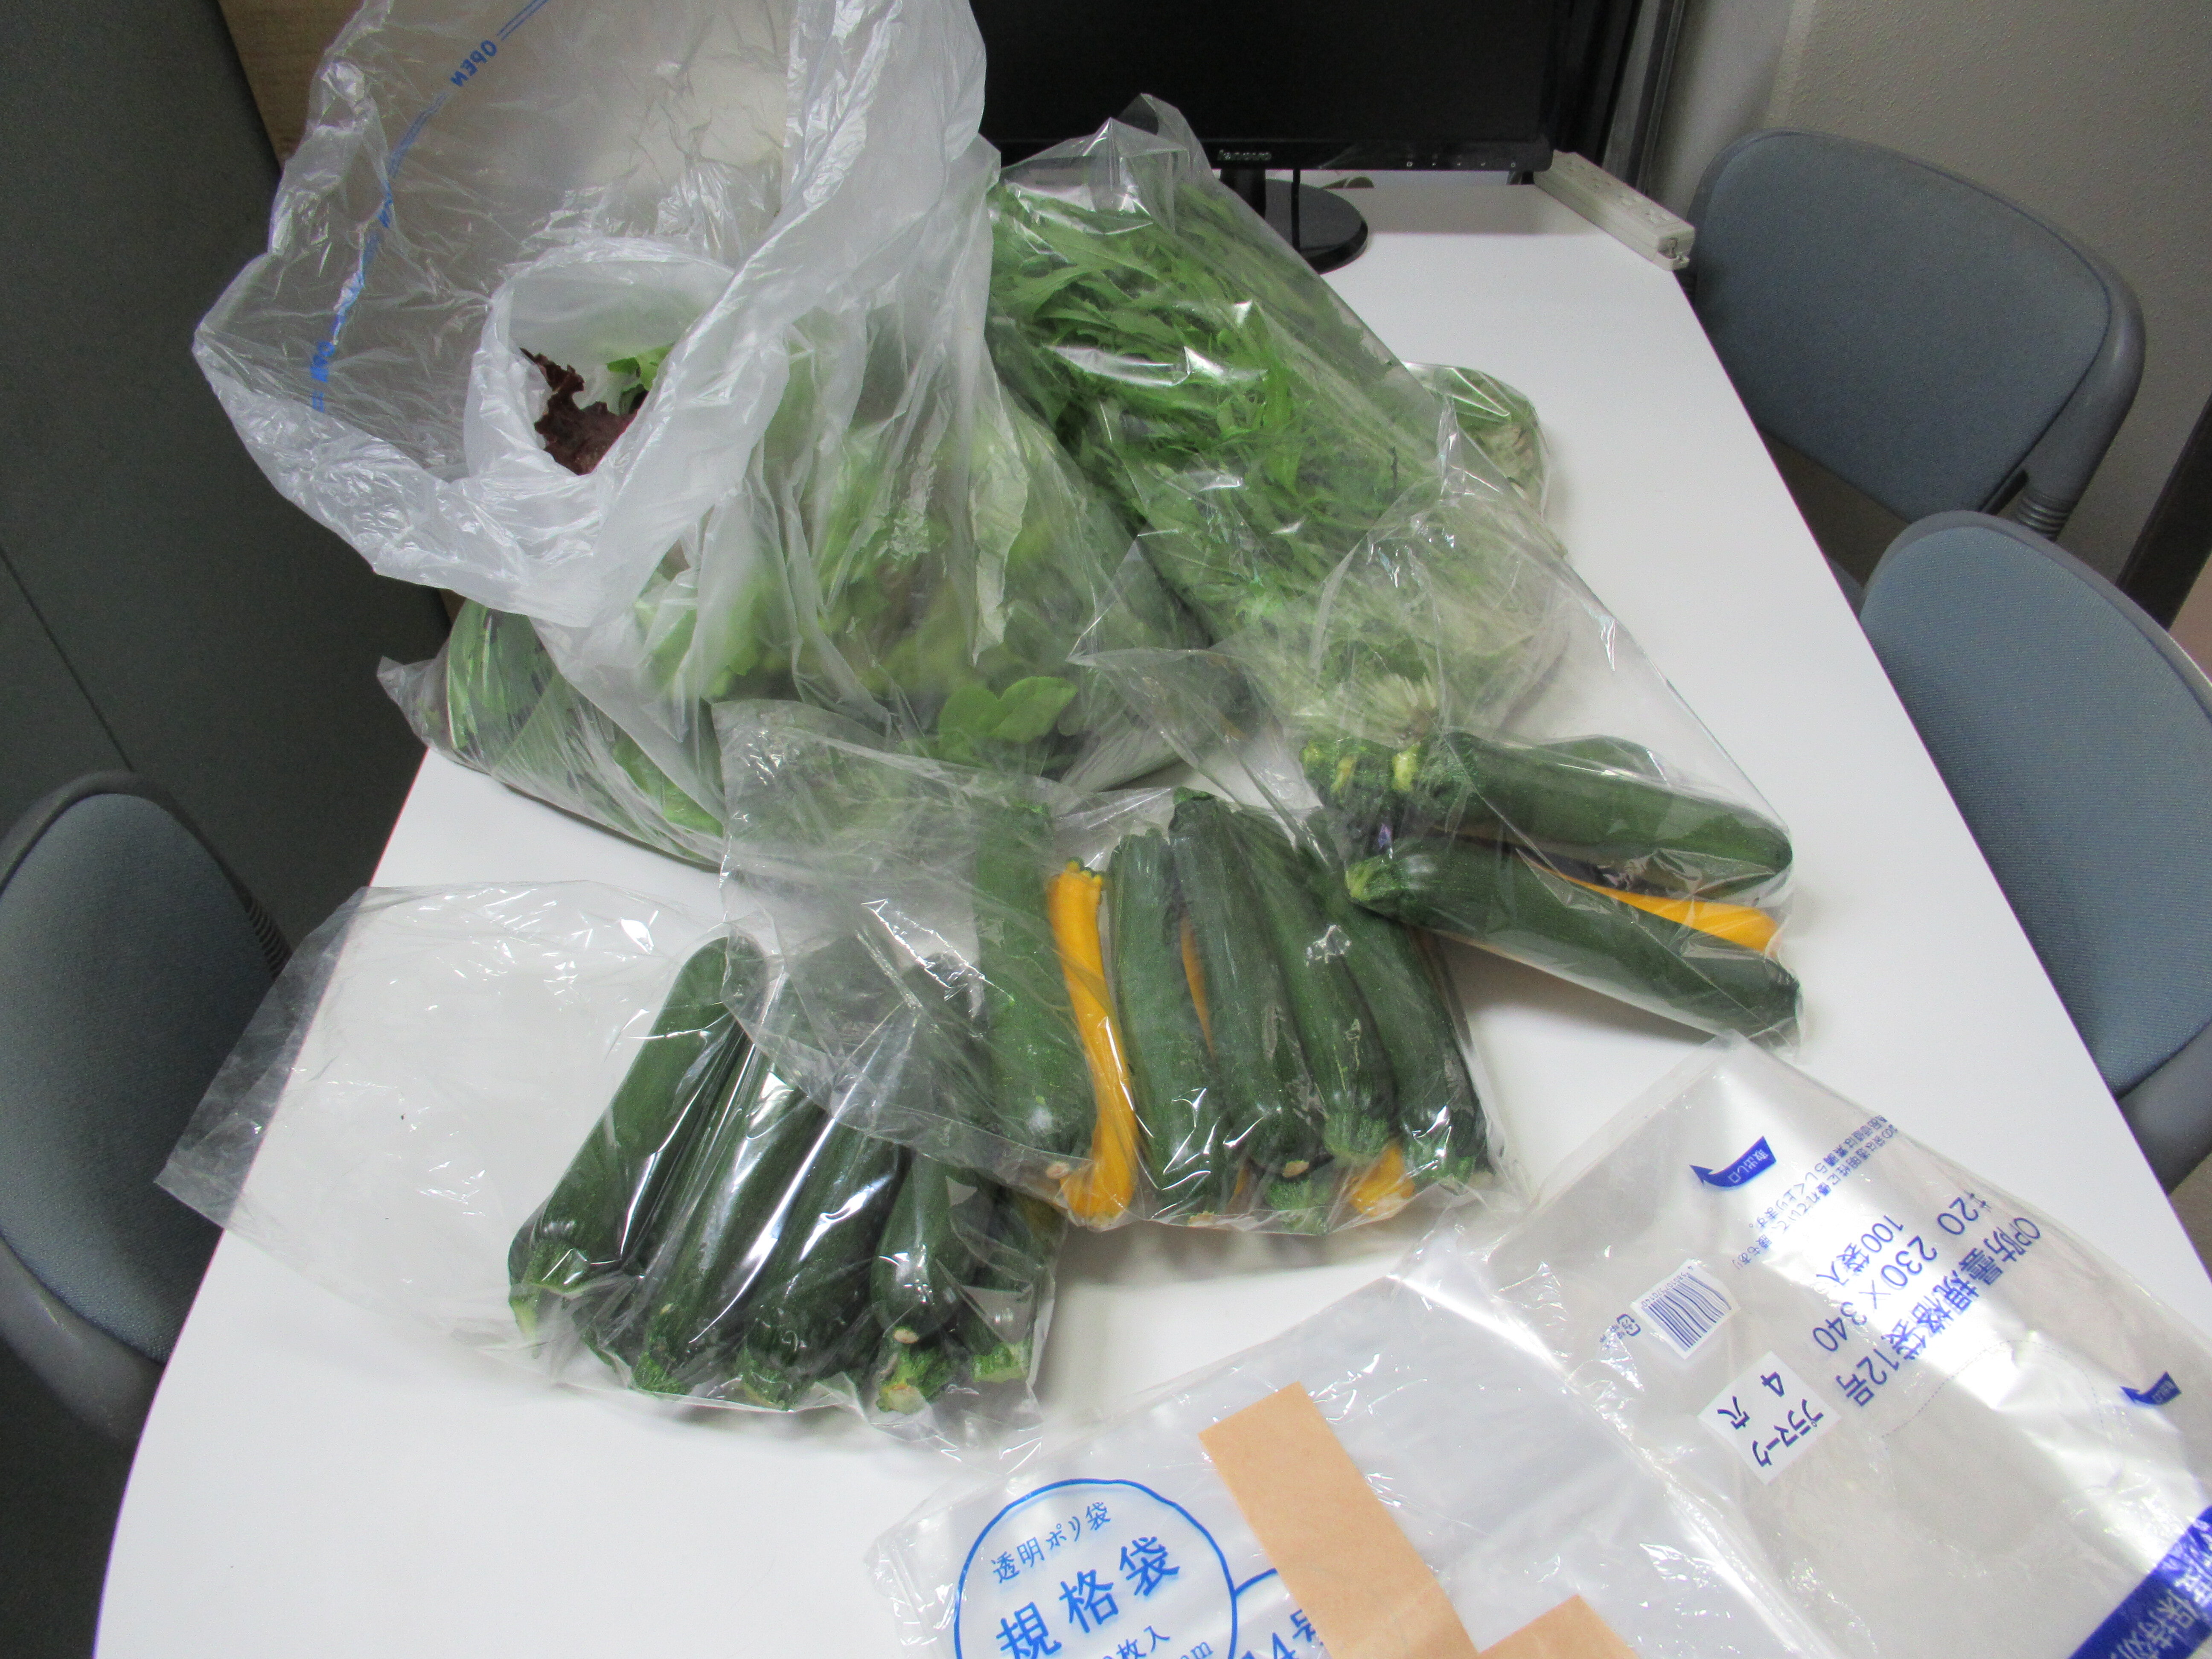 高橋さんのご厚意により、腾博会游戏大厅_腾博会国际娱乐-下载|官网留学生に新鮮な野菜が届けられました。